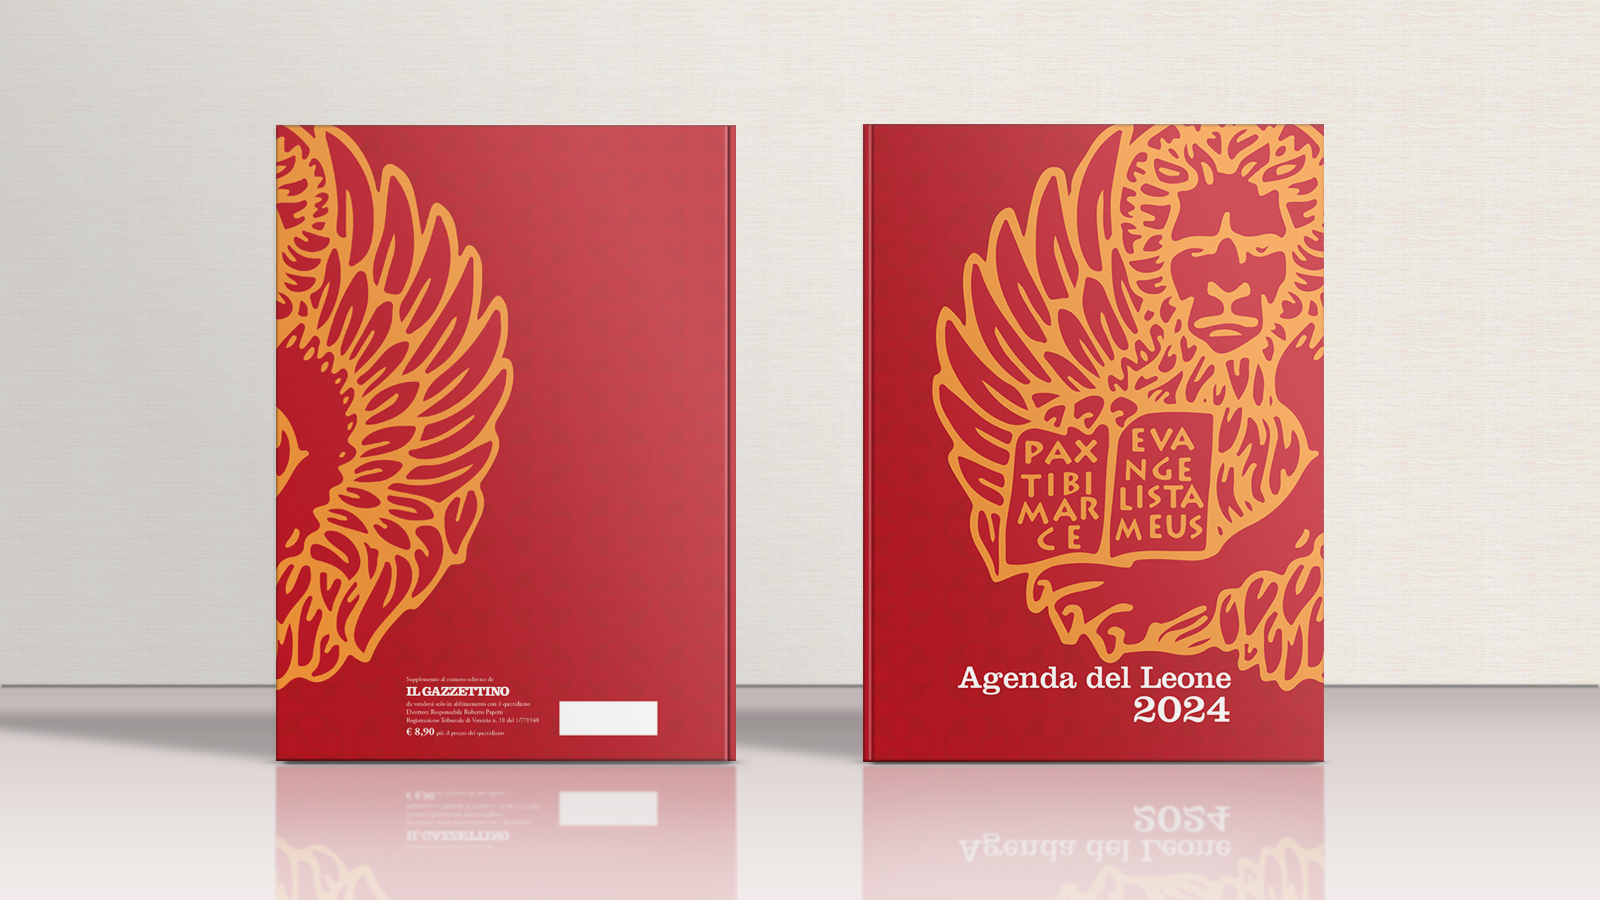 agenda 2024 book cover mockup design